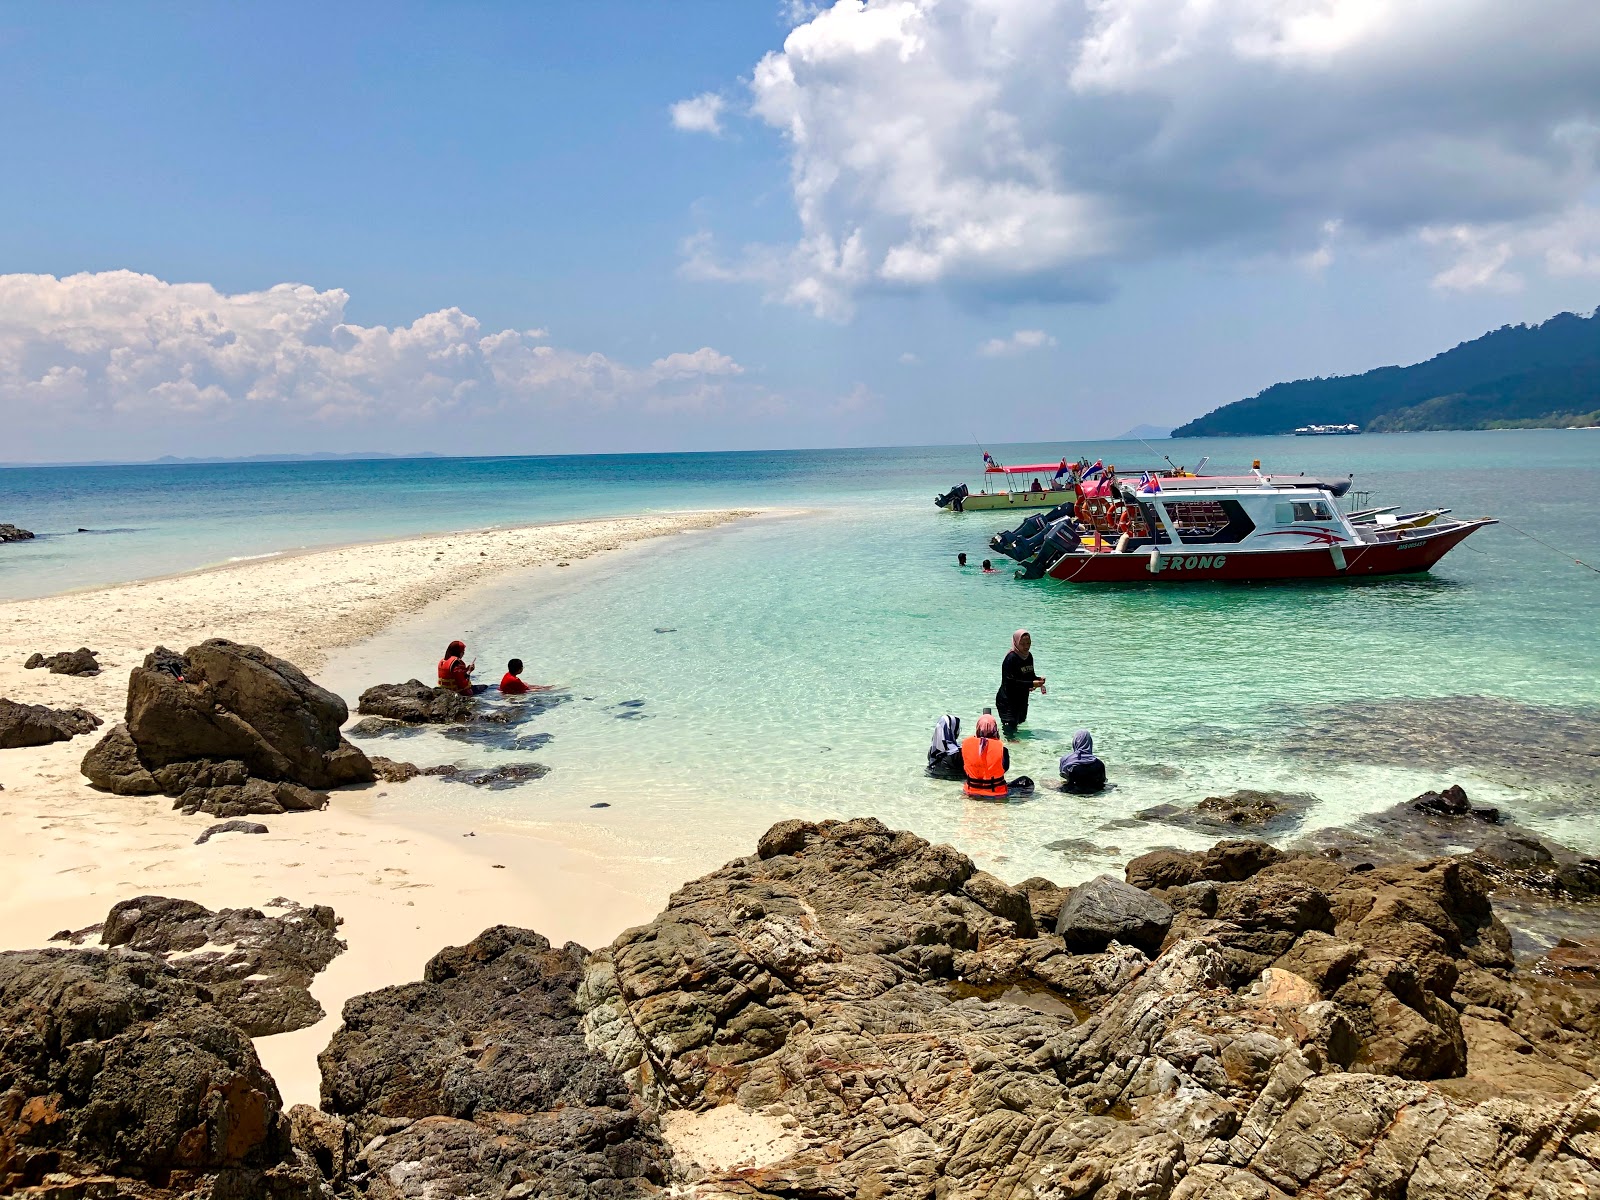 Pulau Mentigi'in fotoğrafı parlak kum yüzey ile